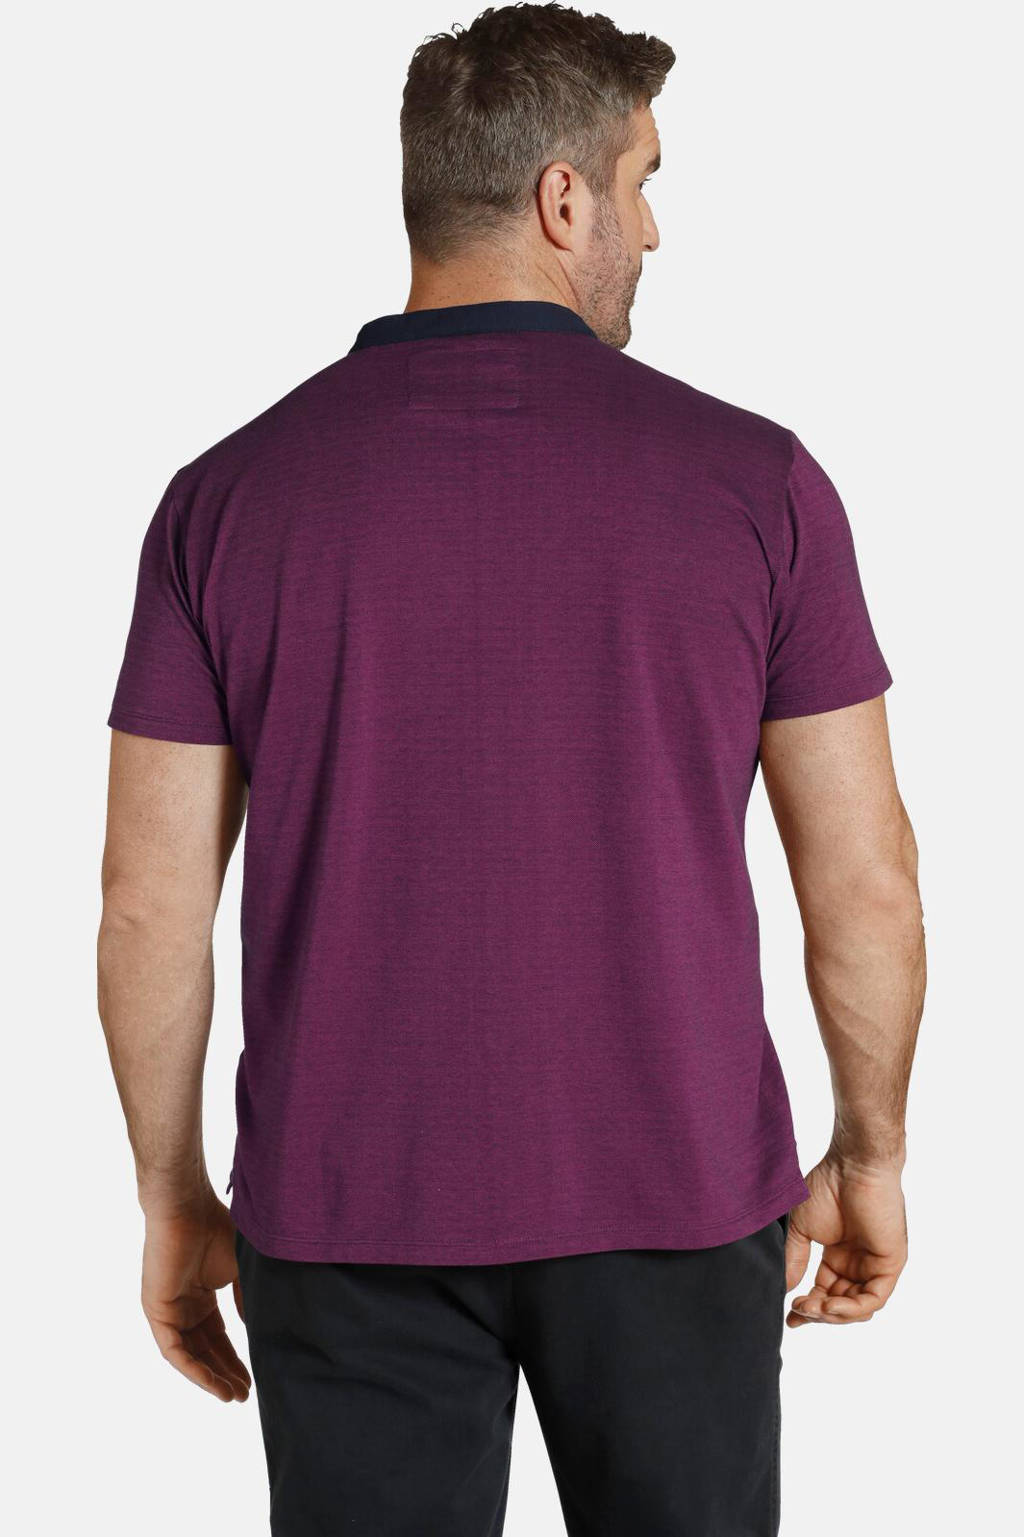 Charles Colby oversized T-shirt EARL DEREK Plus Size met borduursels paars/roze